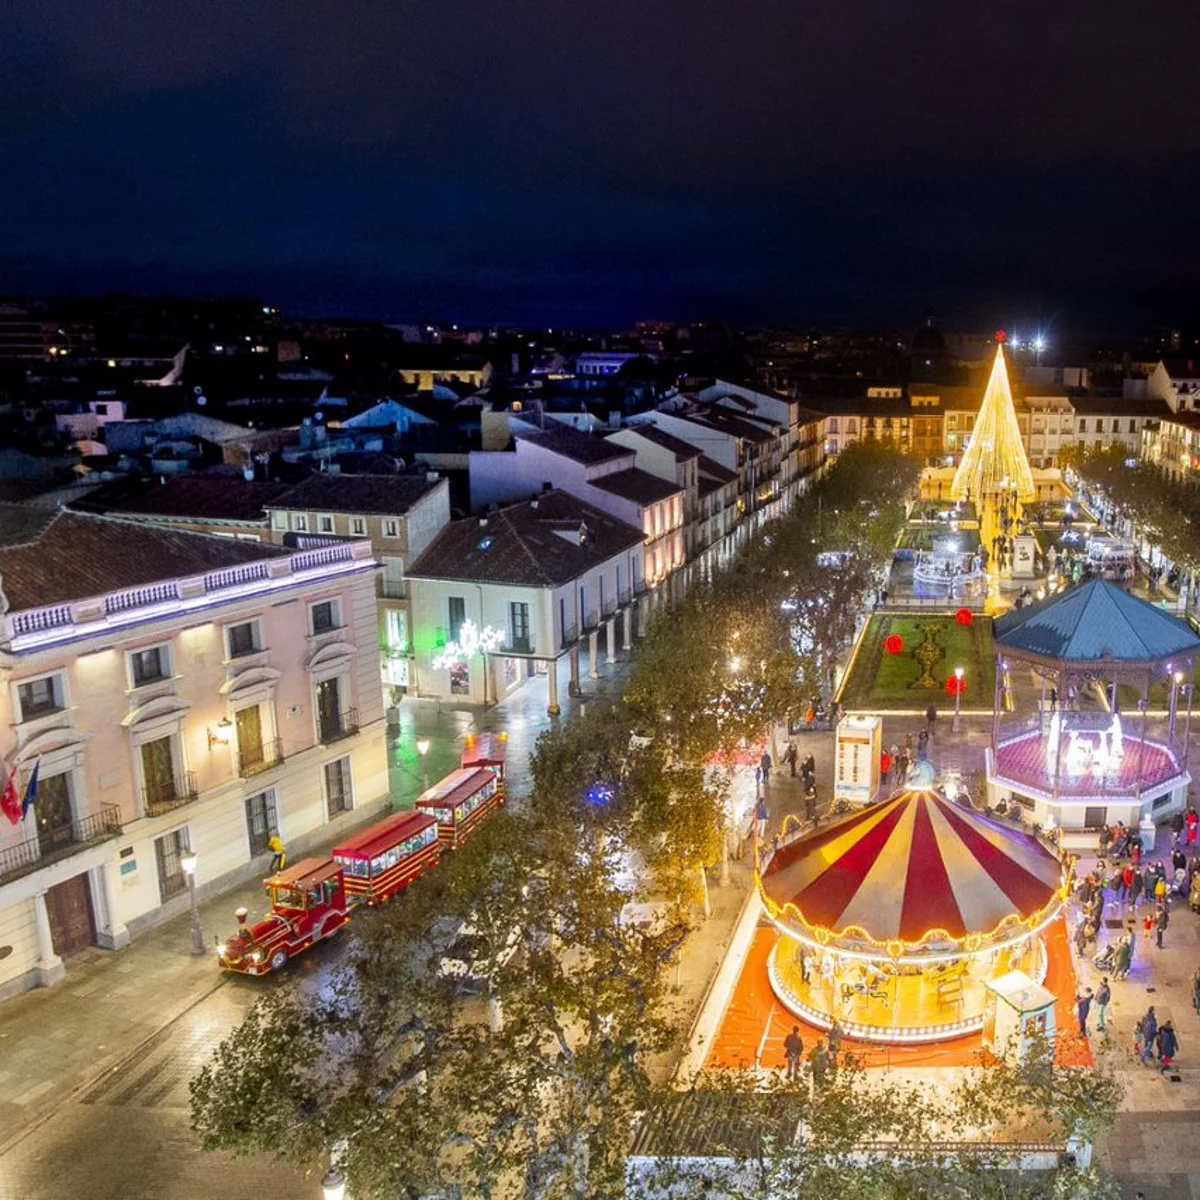 El Mercado de Navidad y otras razones visitar Alcalá de Henares diciembre